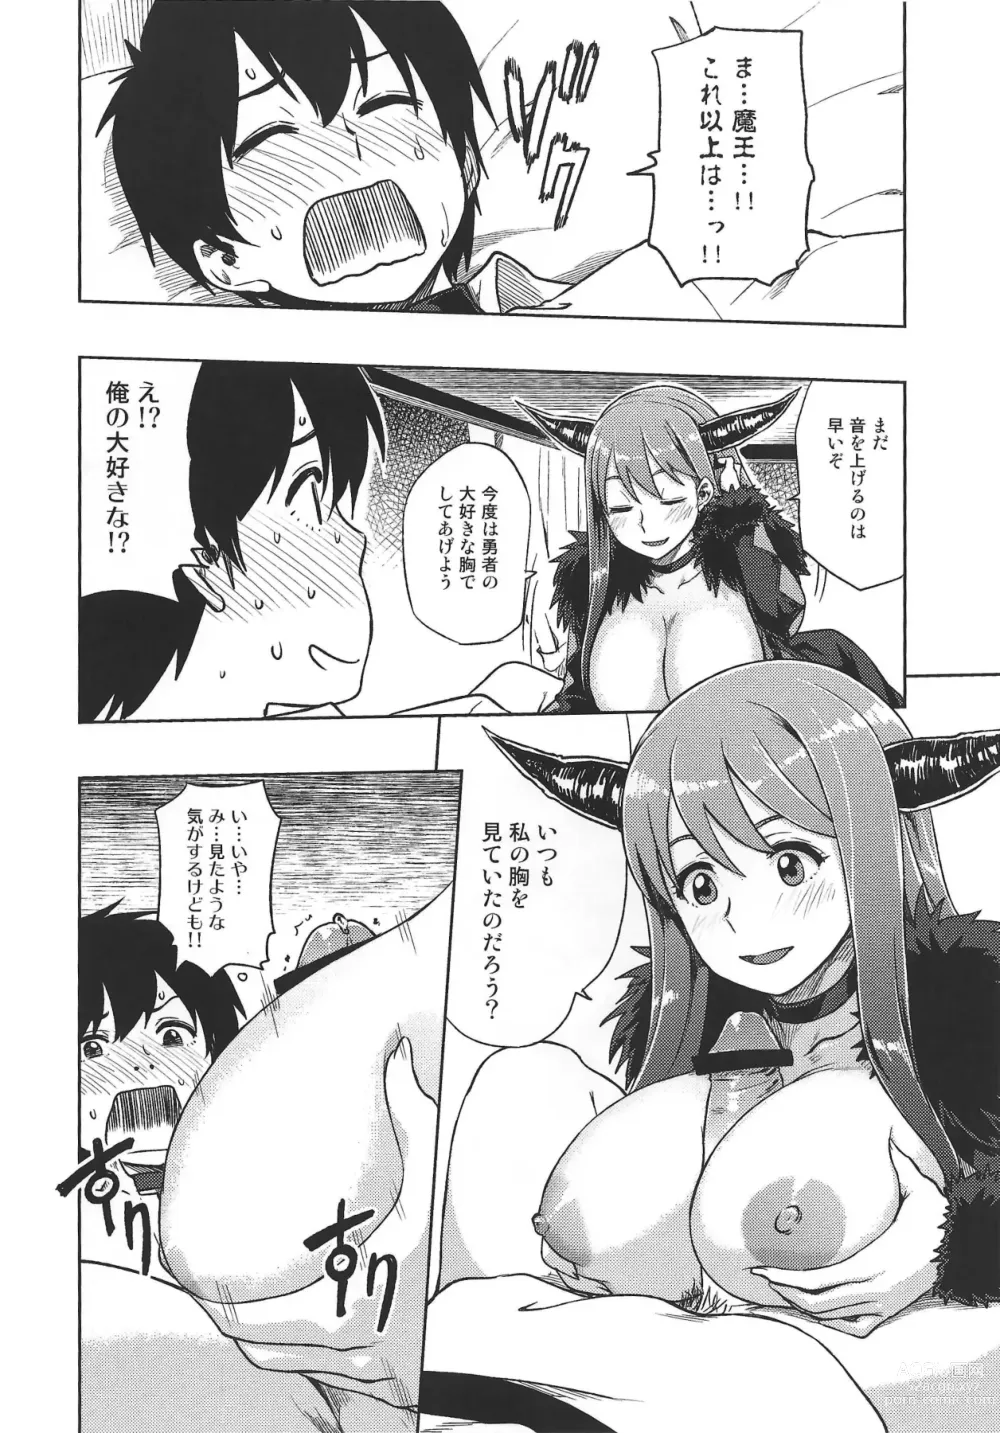 Page 9 of doujinshi Muchiroku 2013 Natsu